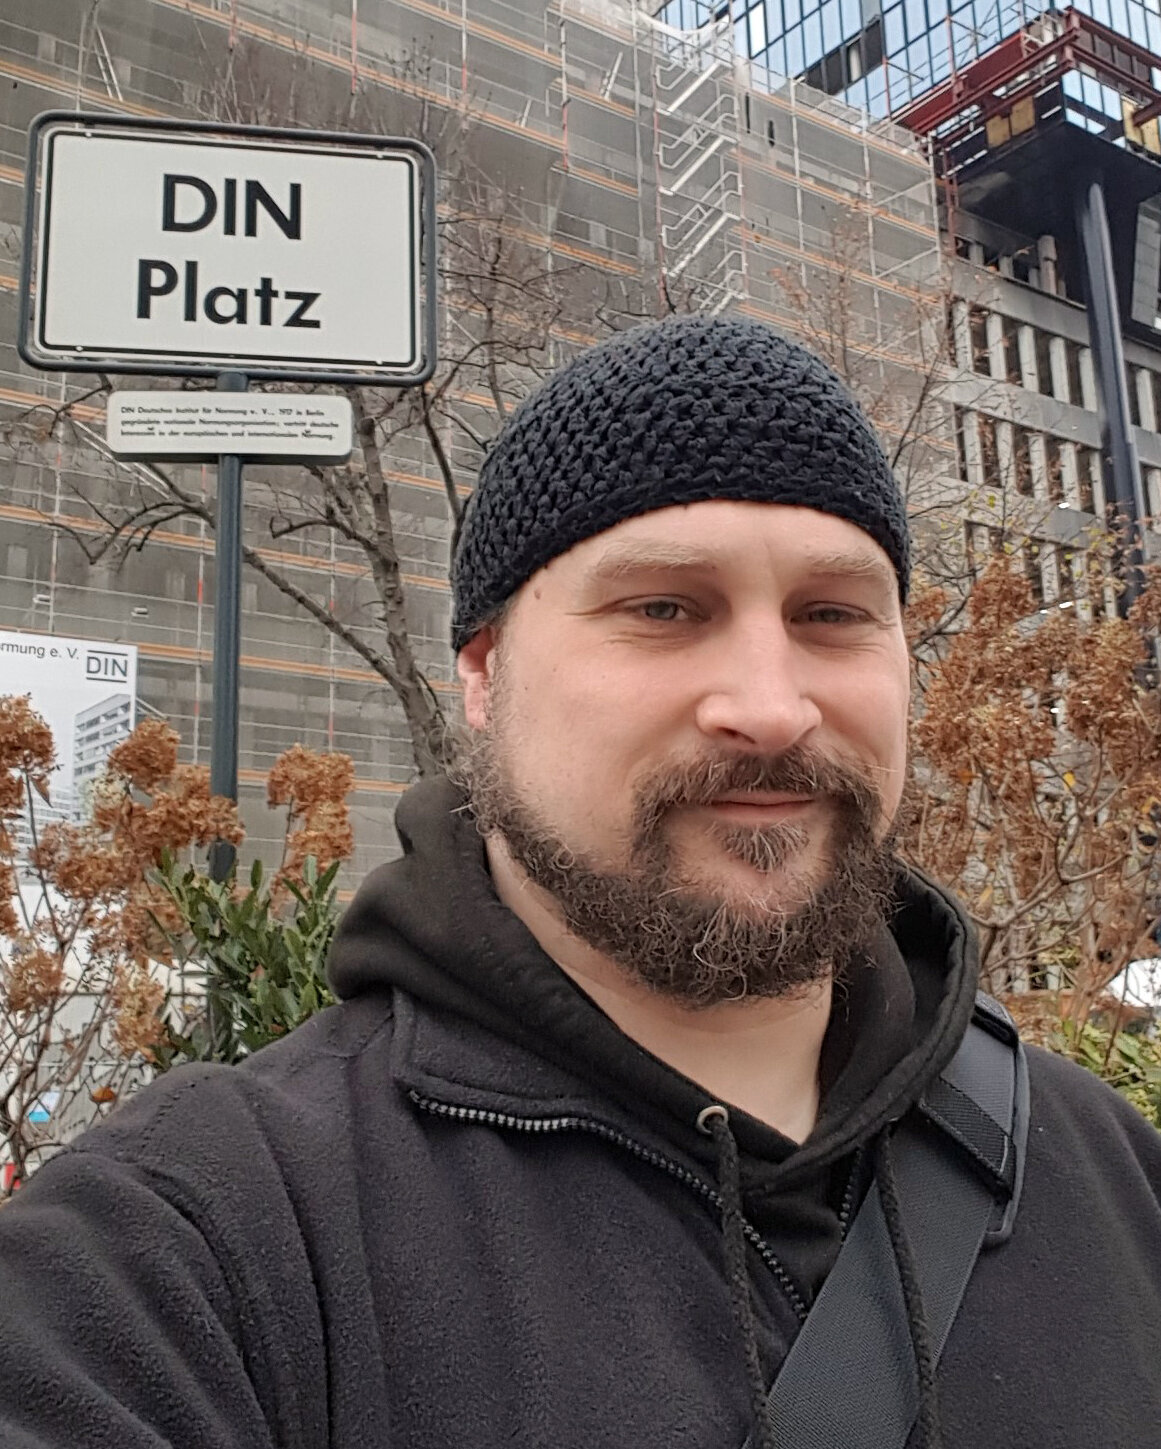 Selfie am DIN-Platz: Die Norm nach Sven Gornys Ansicht sollte die ständige Veränderung sein.